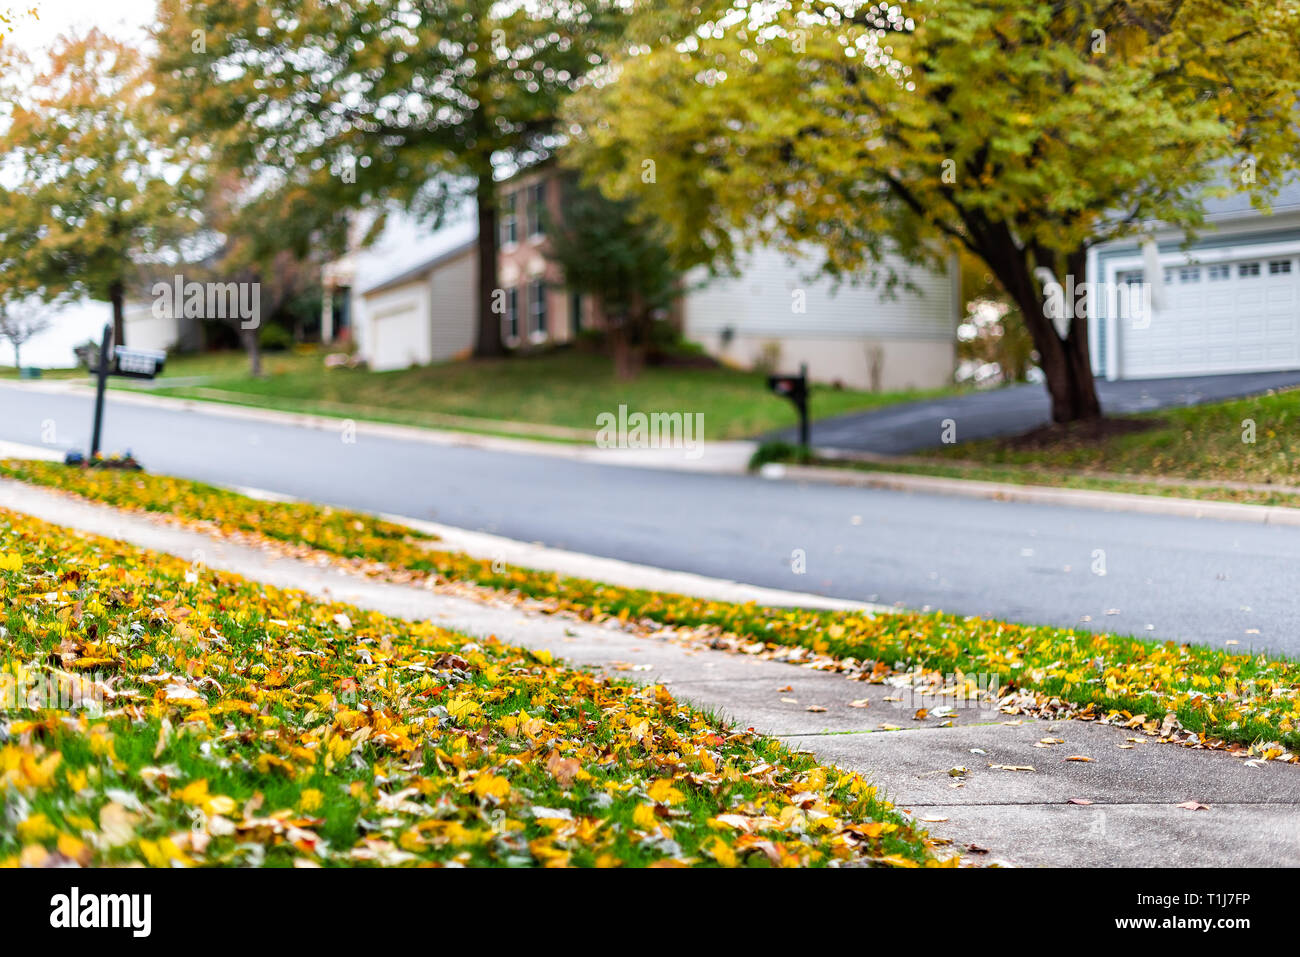 El condado de Fairfax, Virginia del Norte barrio residencial en otoño con casas y carretera pavimentada con nadie y muchos caído otoño amarillo escénica deja Foto de stock